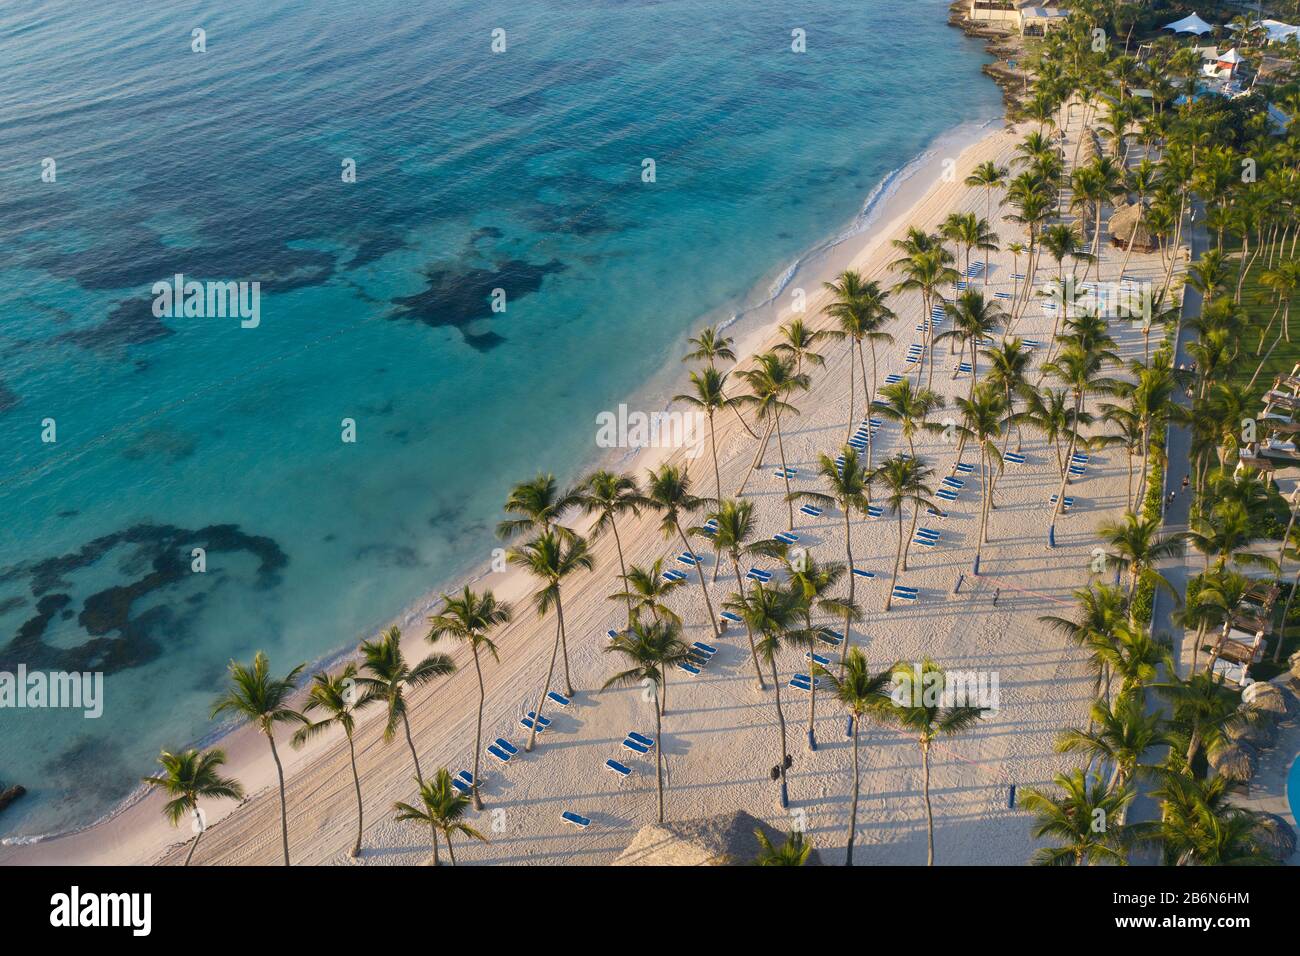 Vista aérea de la hermosa playa de arena blanca en Punta Cana, República Dominicana Foto de stock